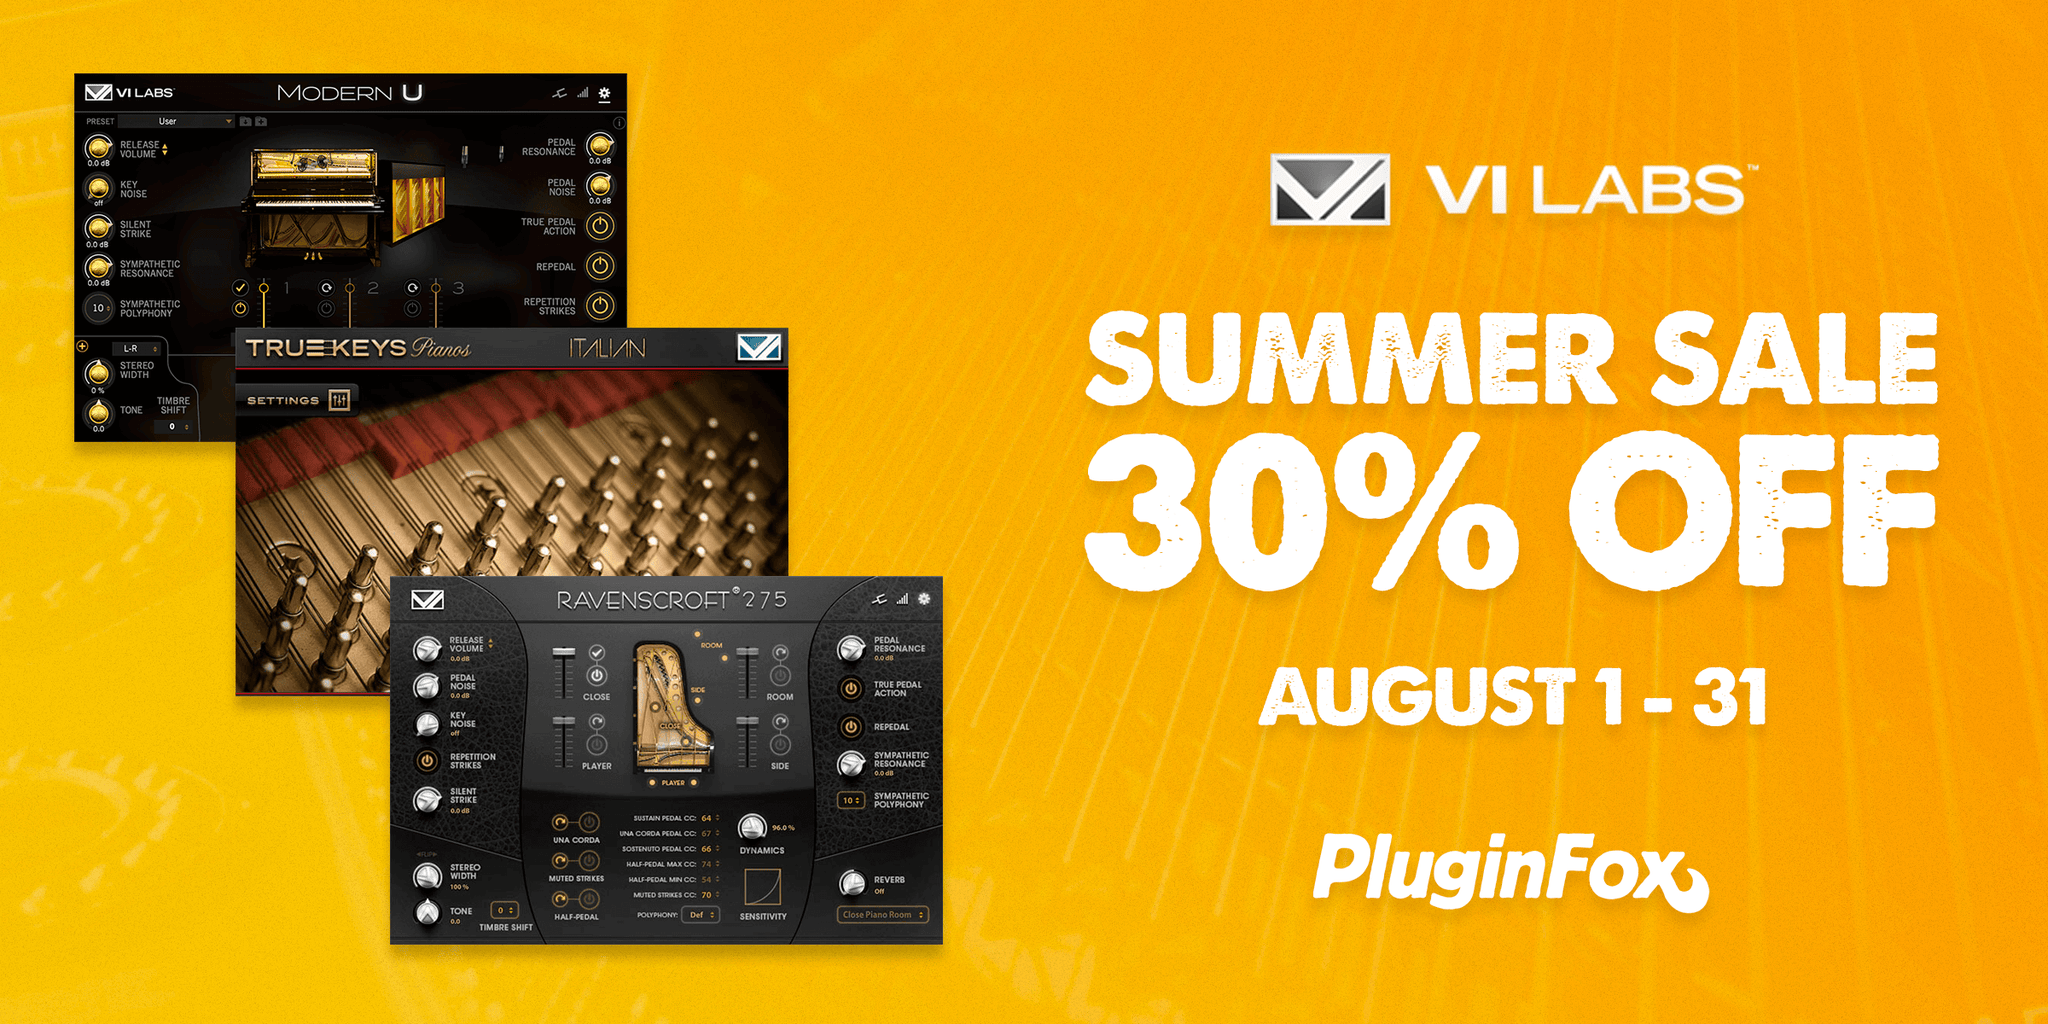 VI Labs Summer Sale - Aug 1-31